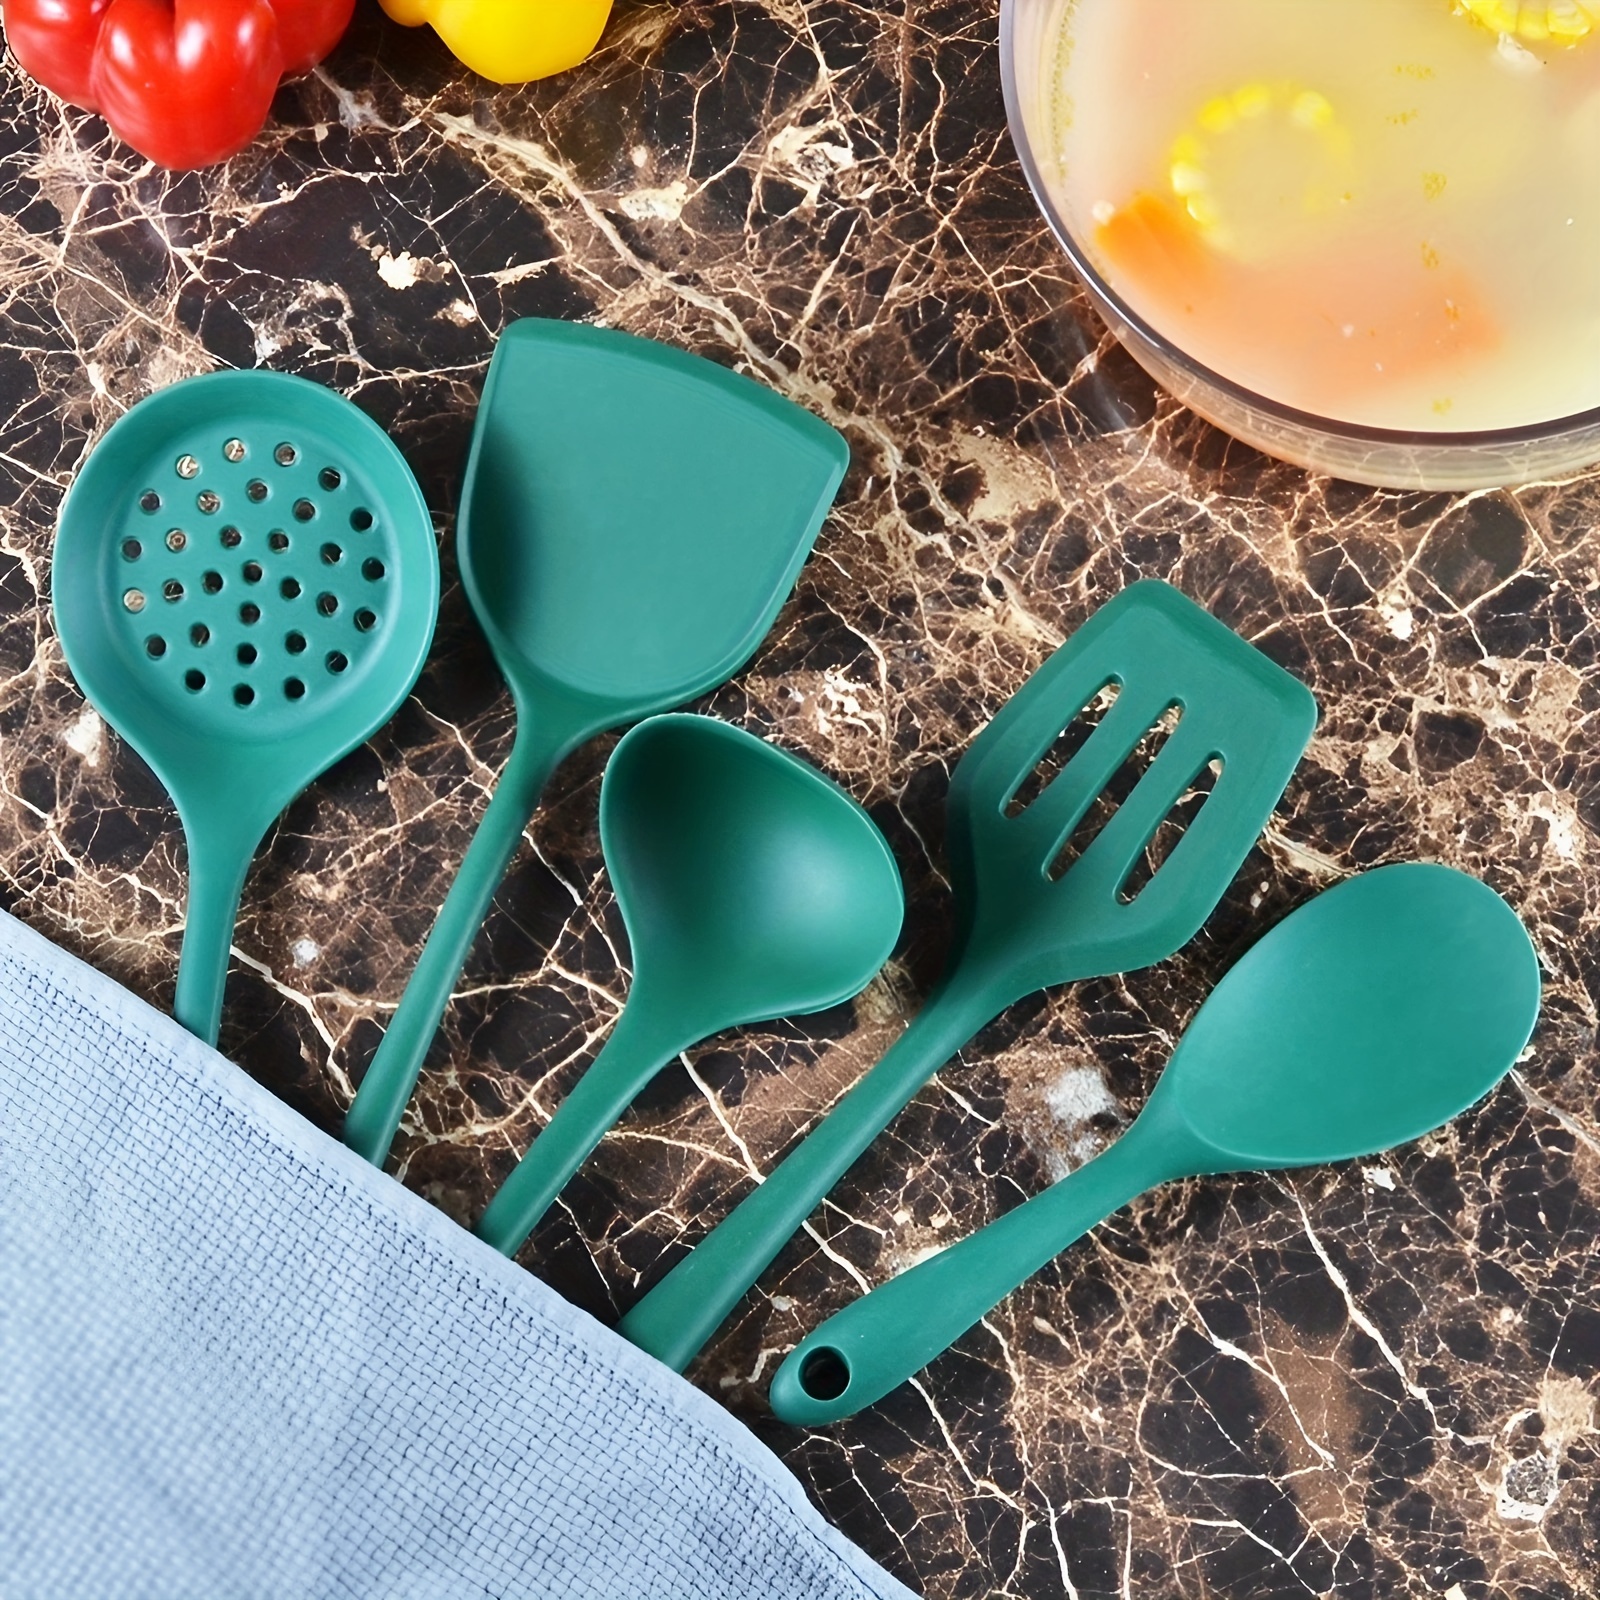 Best Silicone Kitchen Utensil Set silicone kitchen utensils